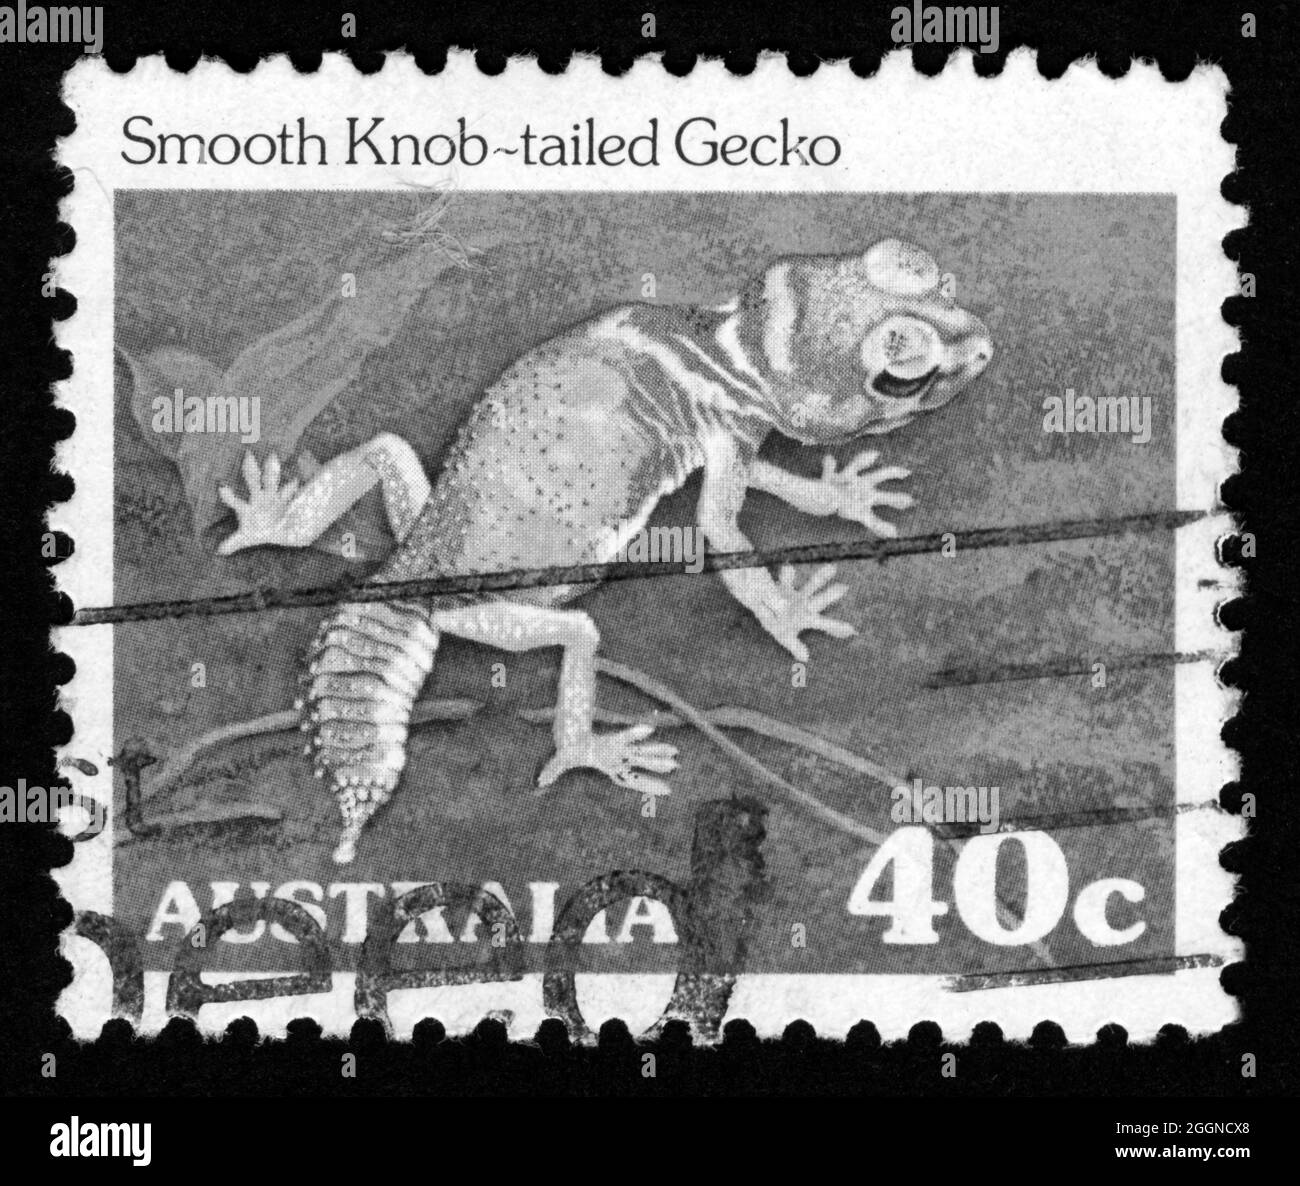 Imprimé timbres en Australie, Gecko à queue de bouton lisse, animaux Banque D'Images